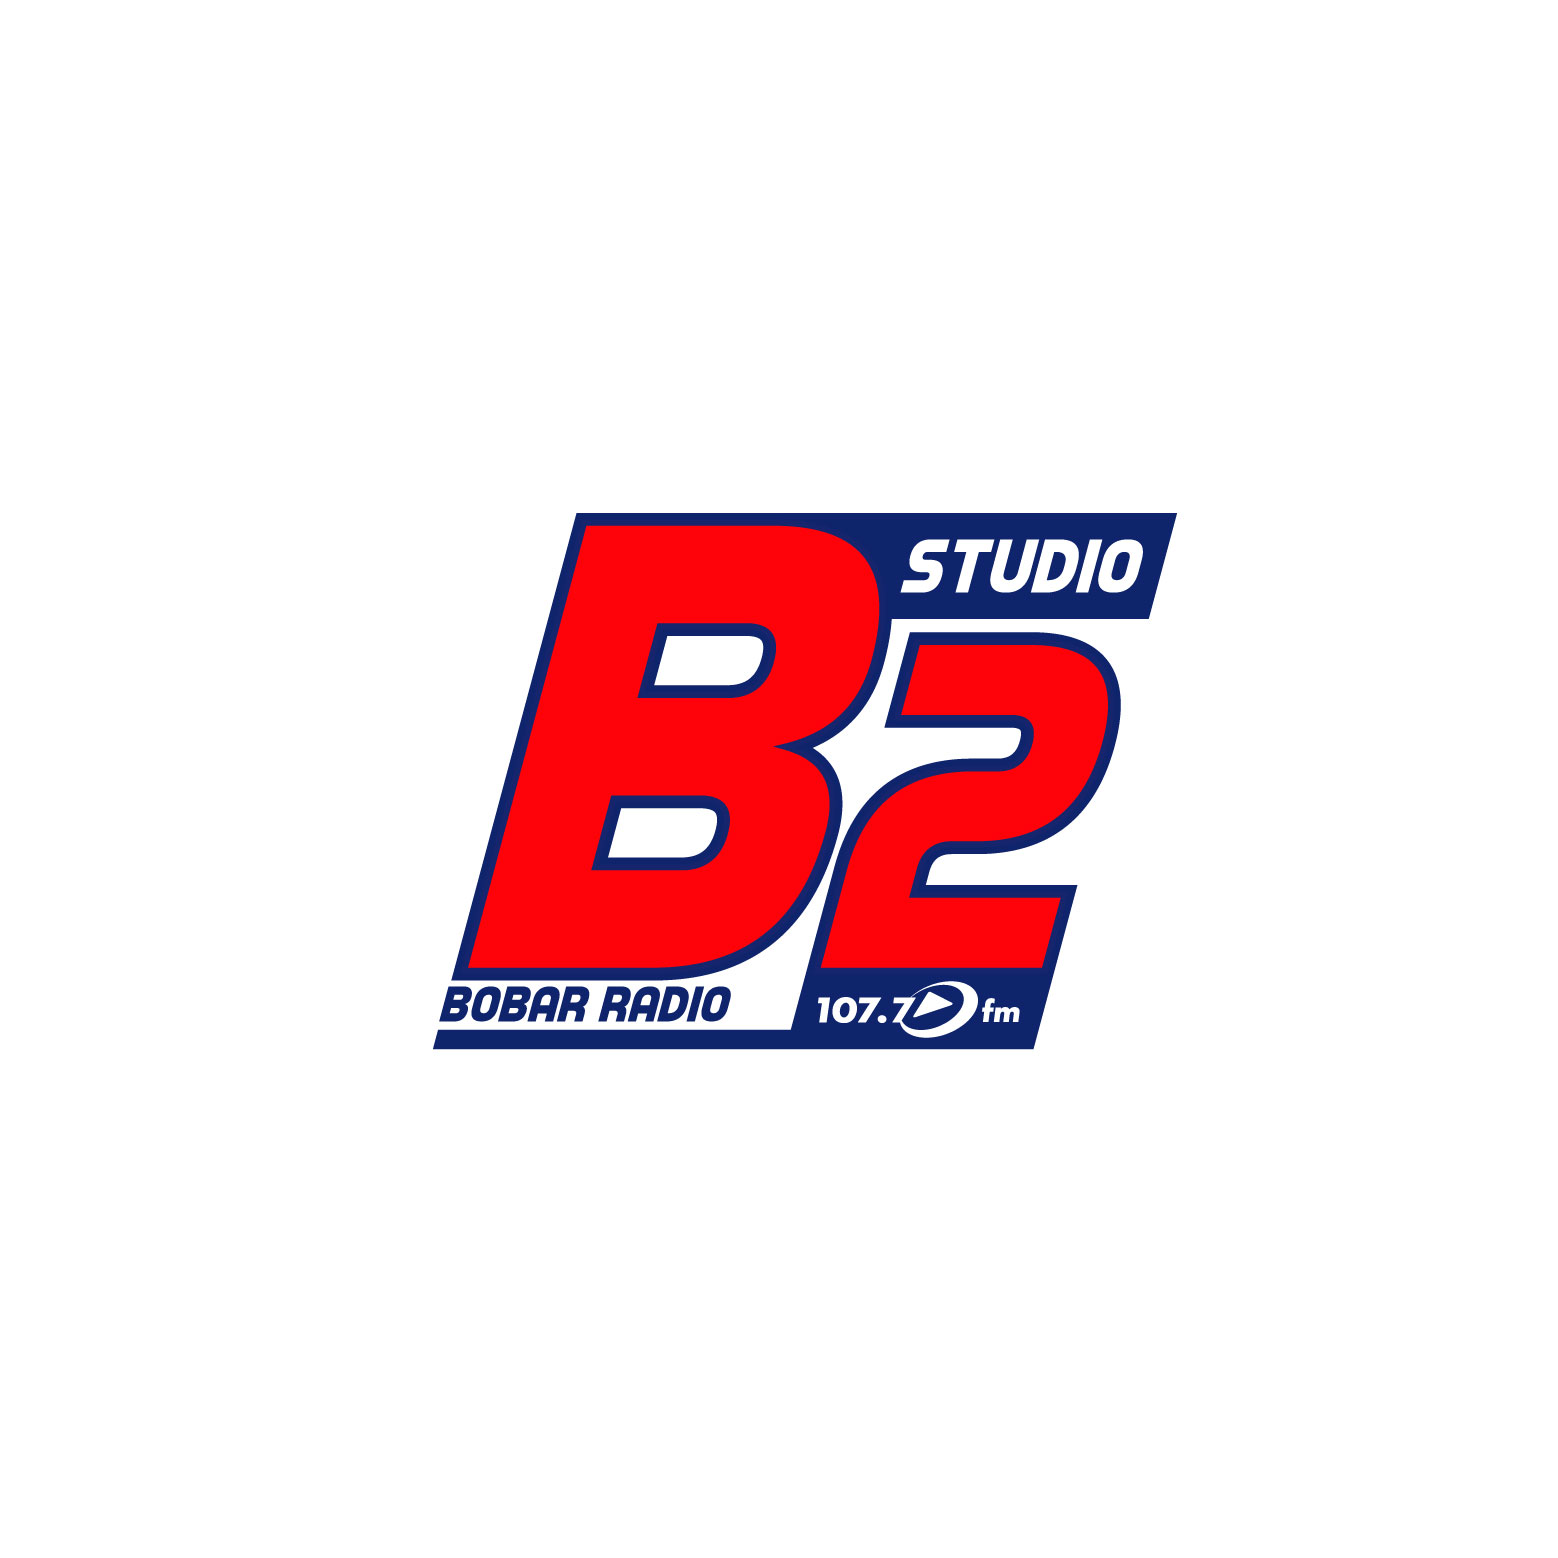 BOBAR radio Studio b2